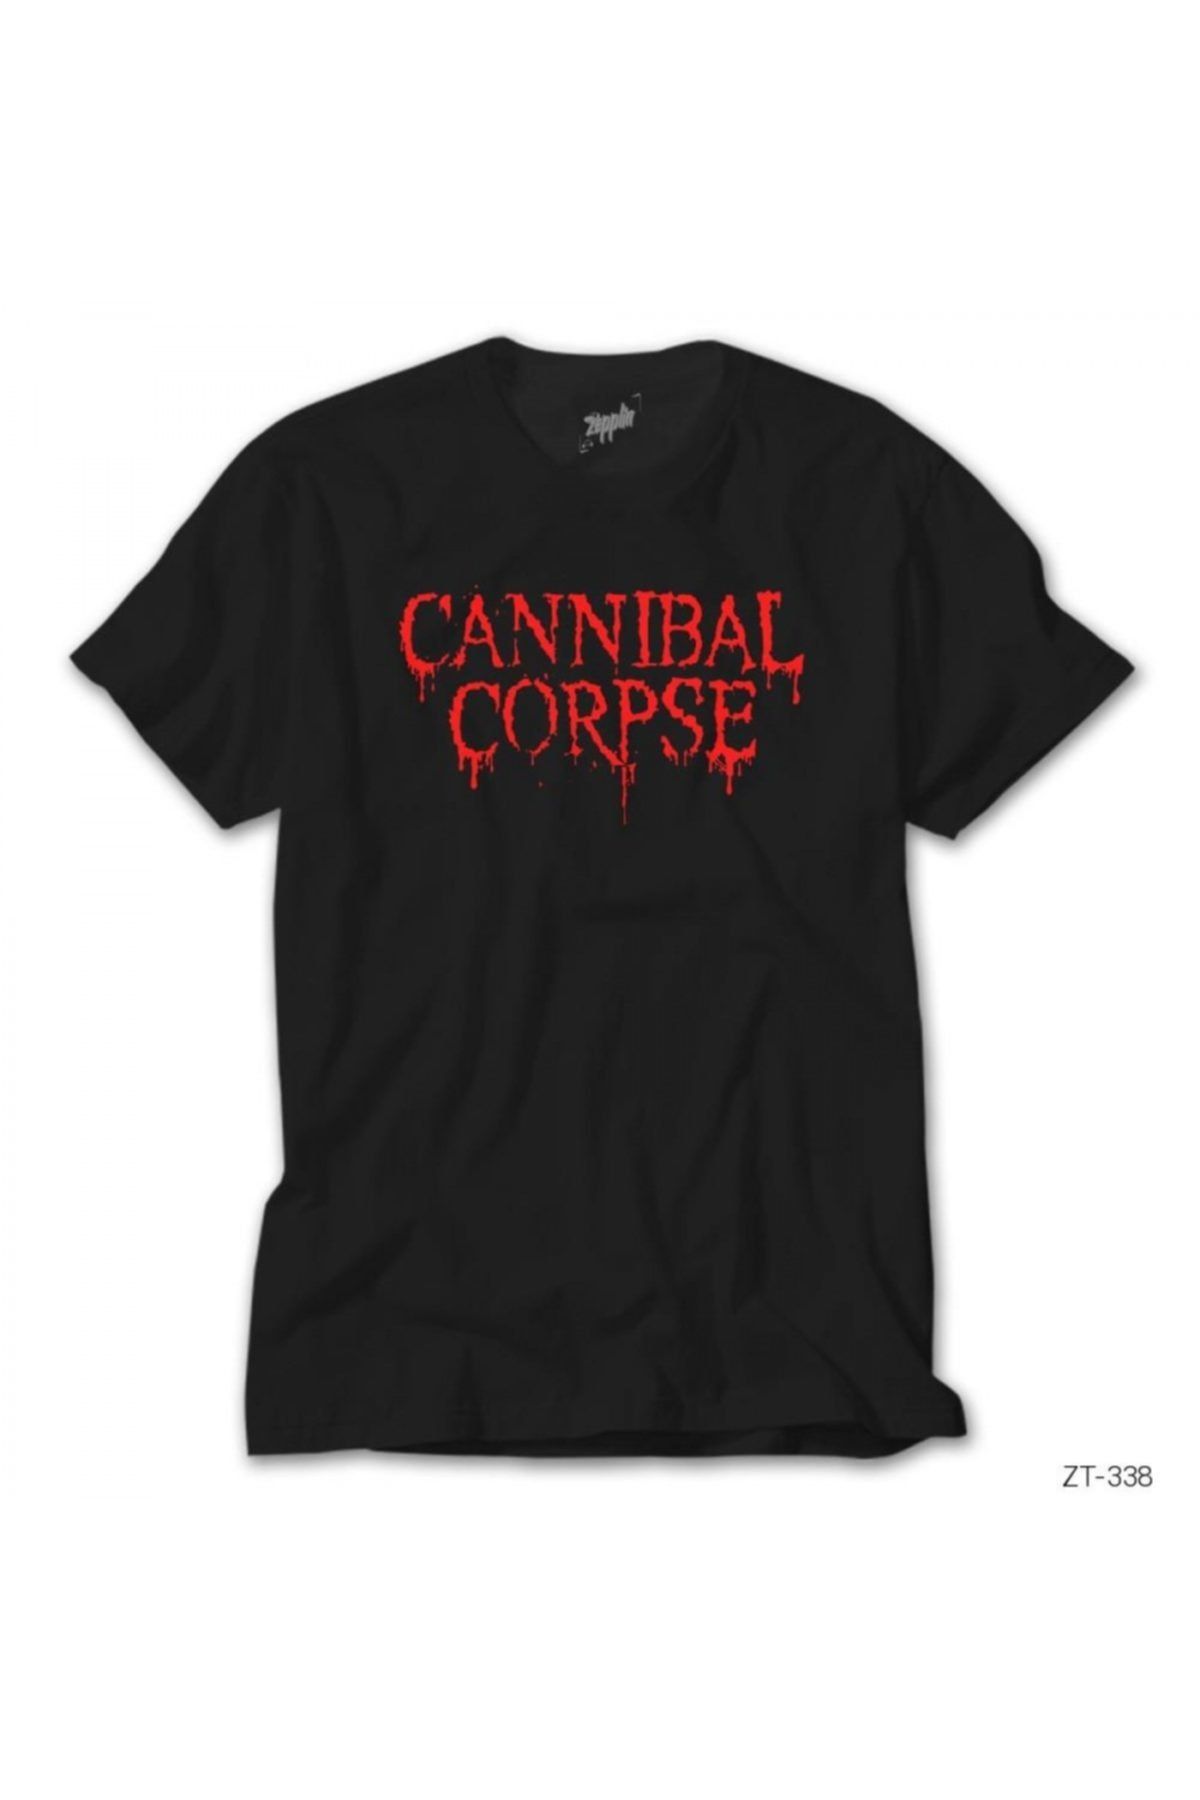 Z zepplin Cannibal Corpse Siyah Tişört